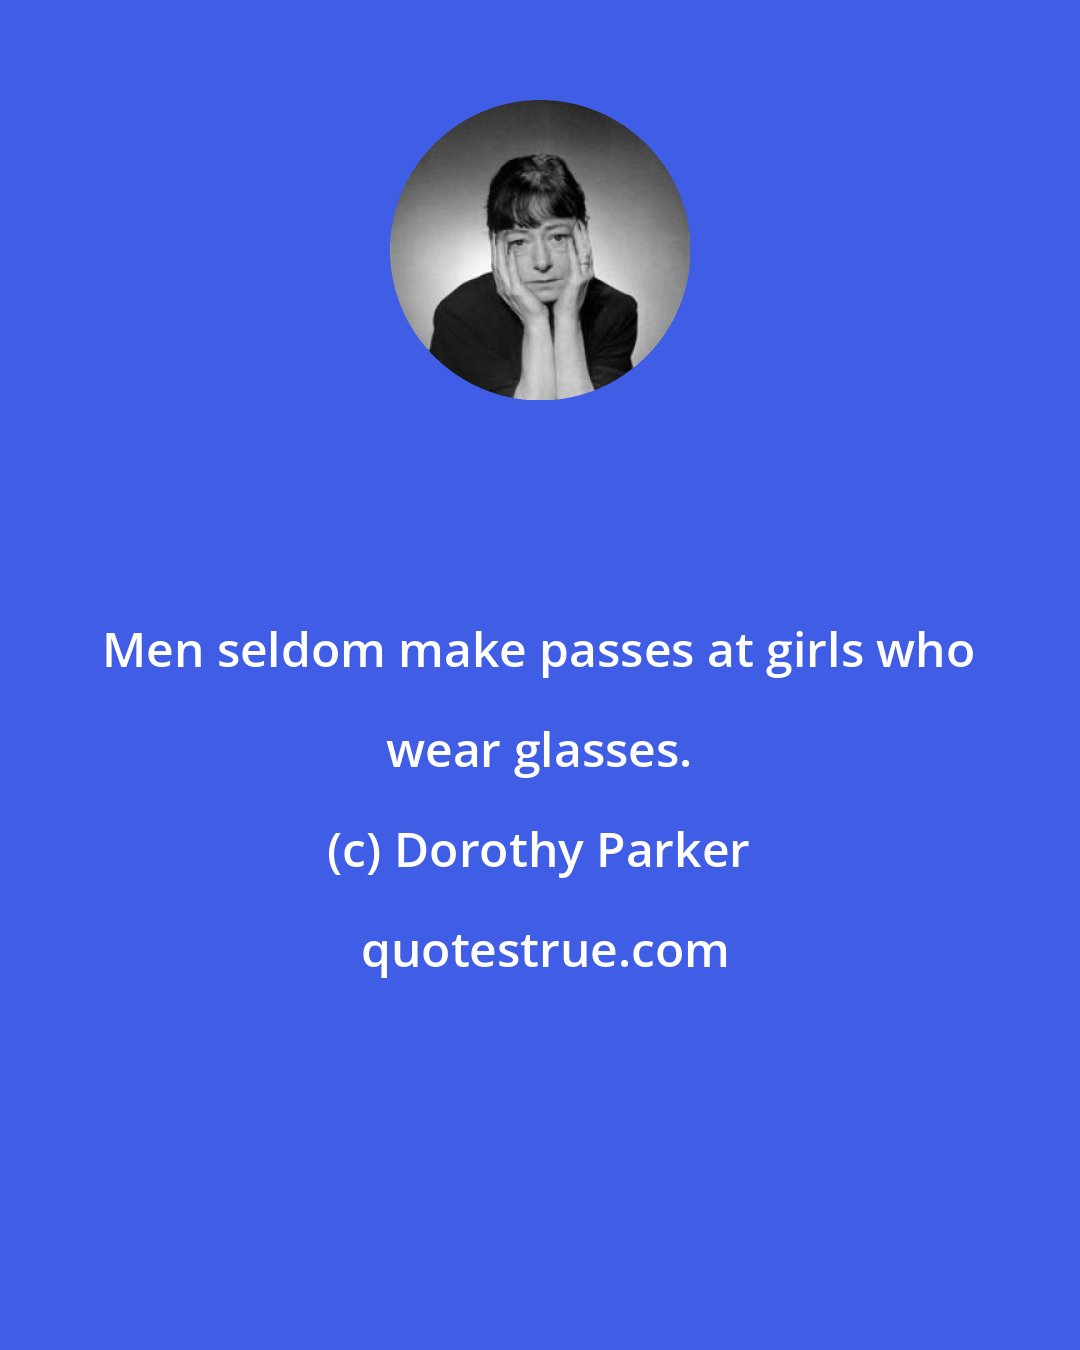 Dorothy Parker: Men seldom make passes at girls who wear glasses.